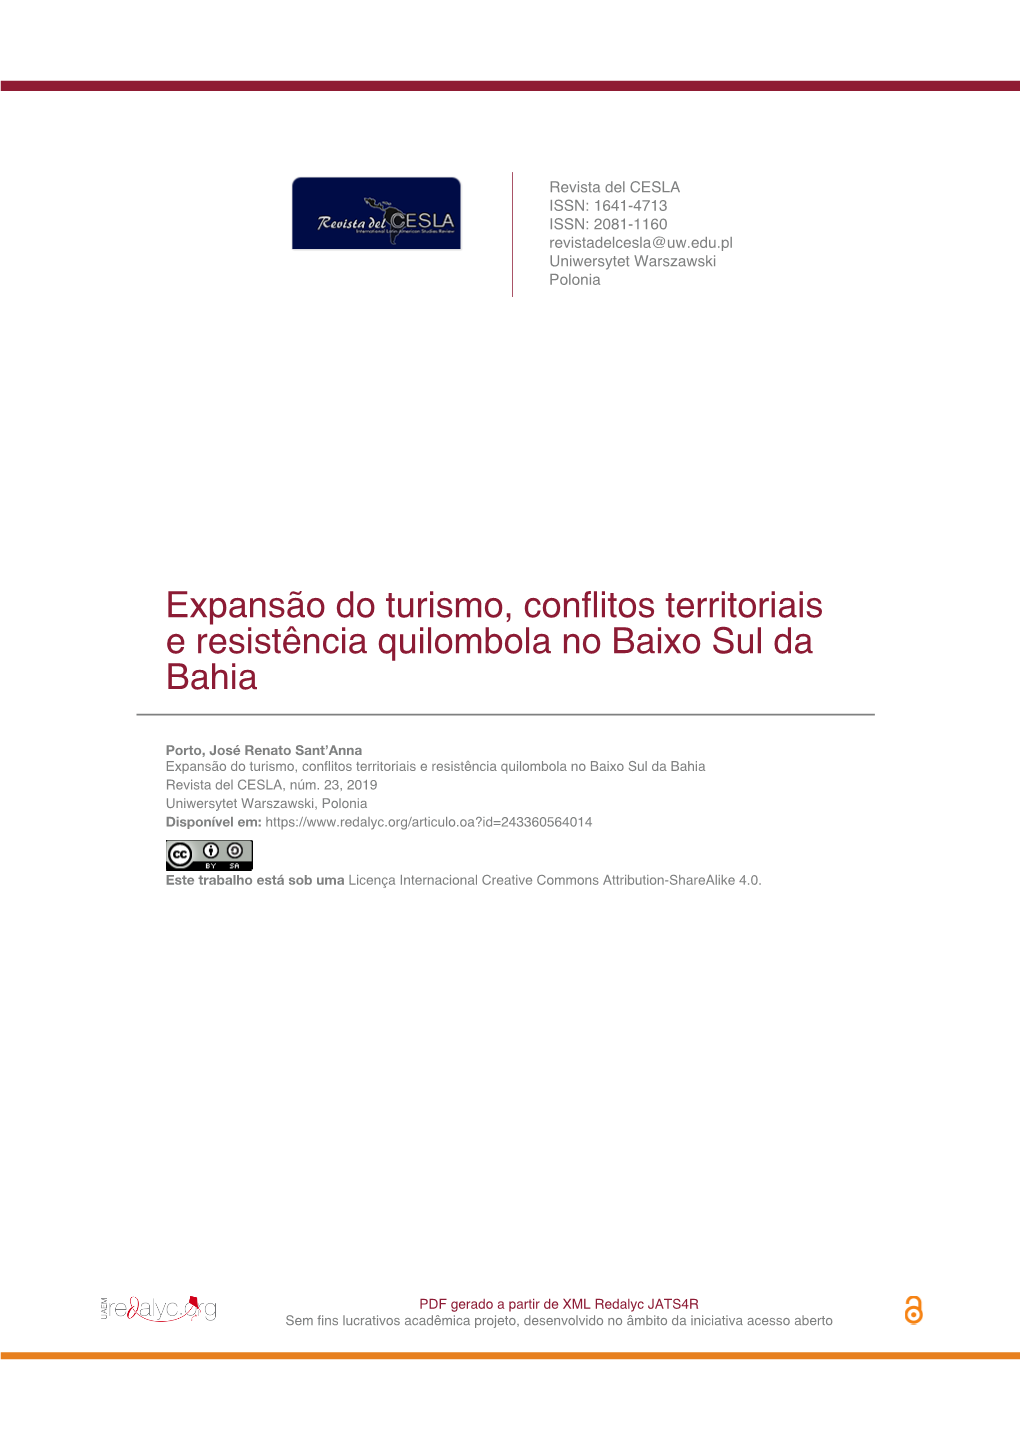 Expansão Do Turismo, Conflitos Territoriais E Resistência Quilombola No Baixo Sul Da Bahia